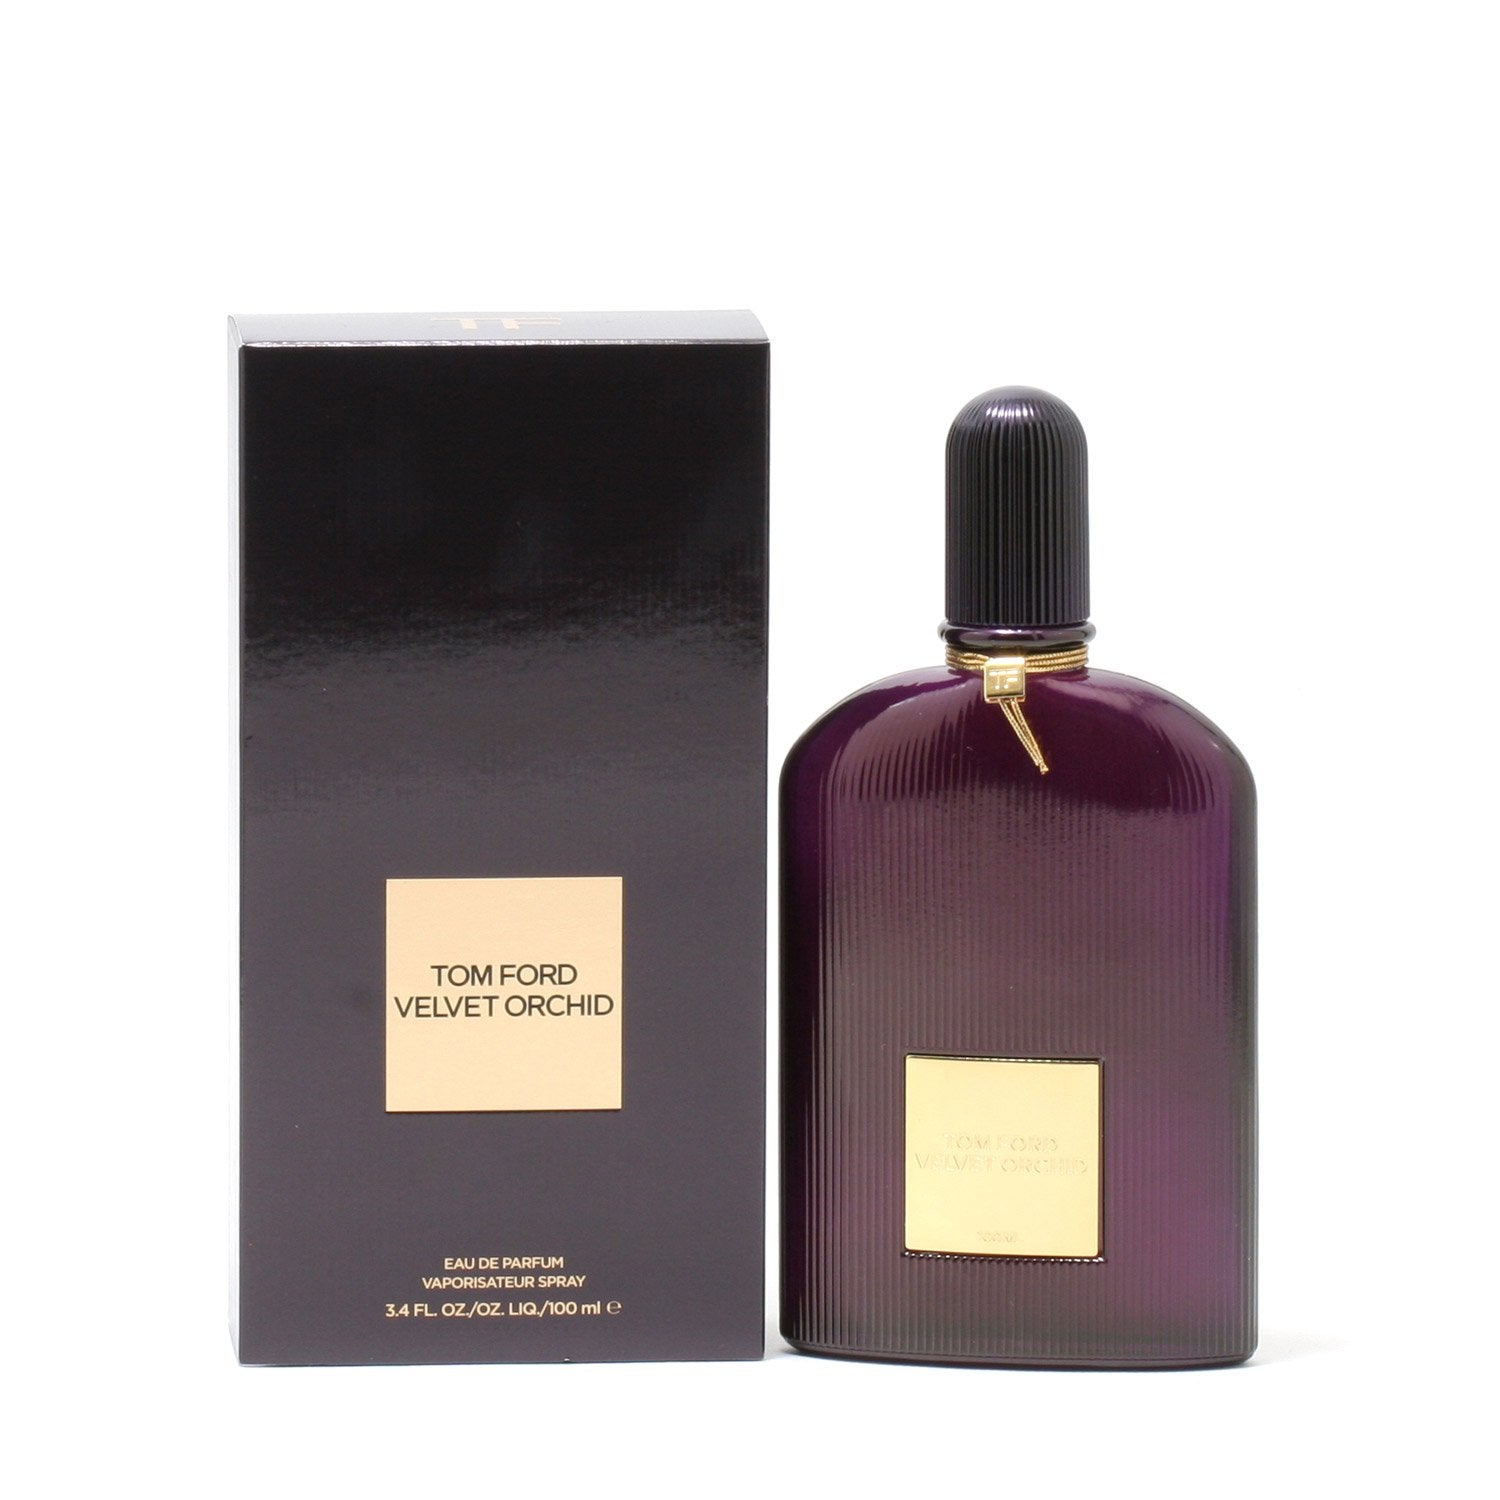 Perfume - TOM FORD VELVET ORCHID FOR WOMEN - EAU DE PARFUM SPRAY